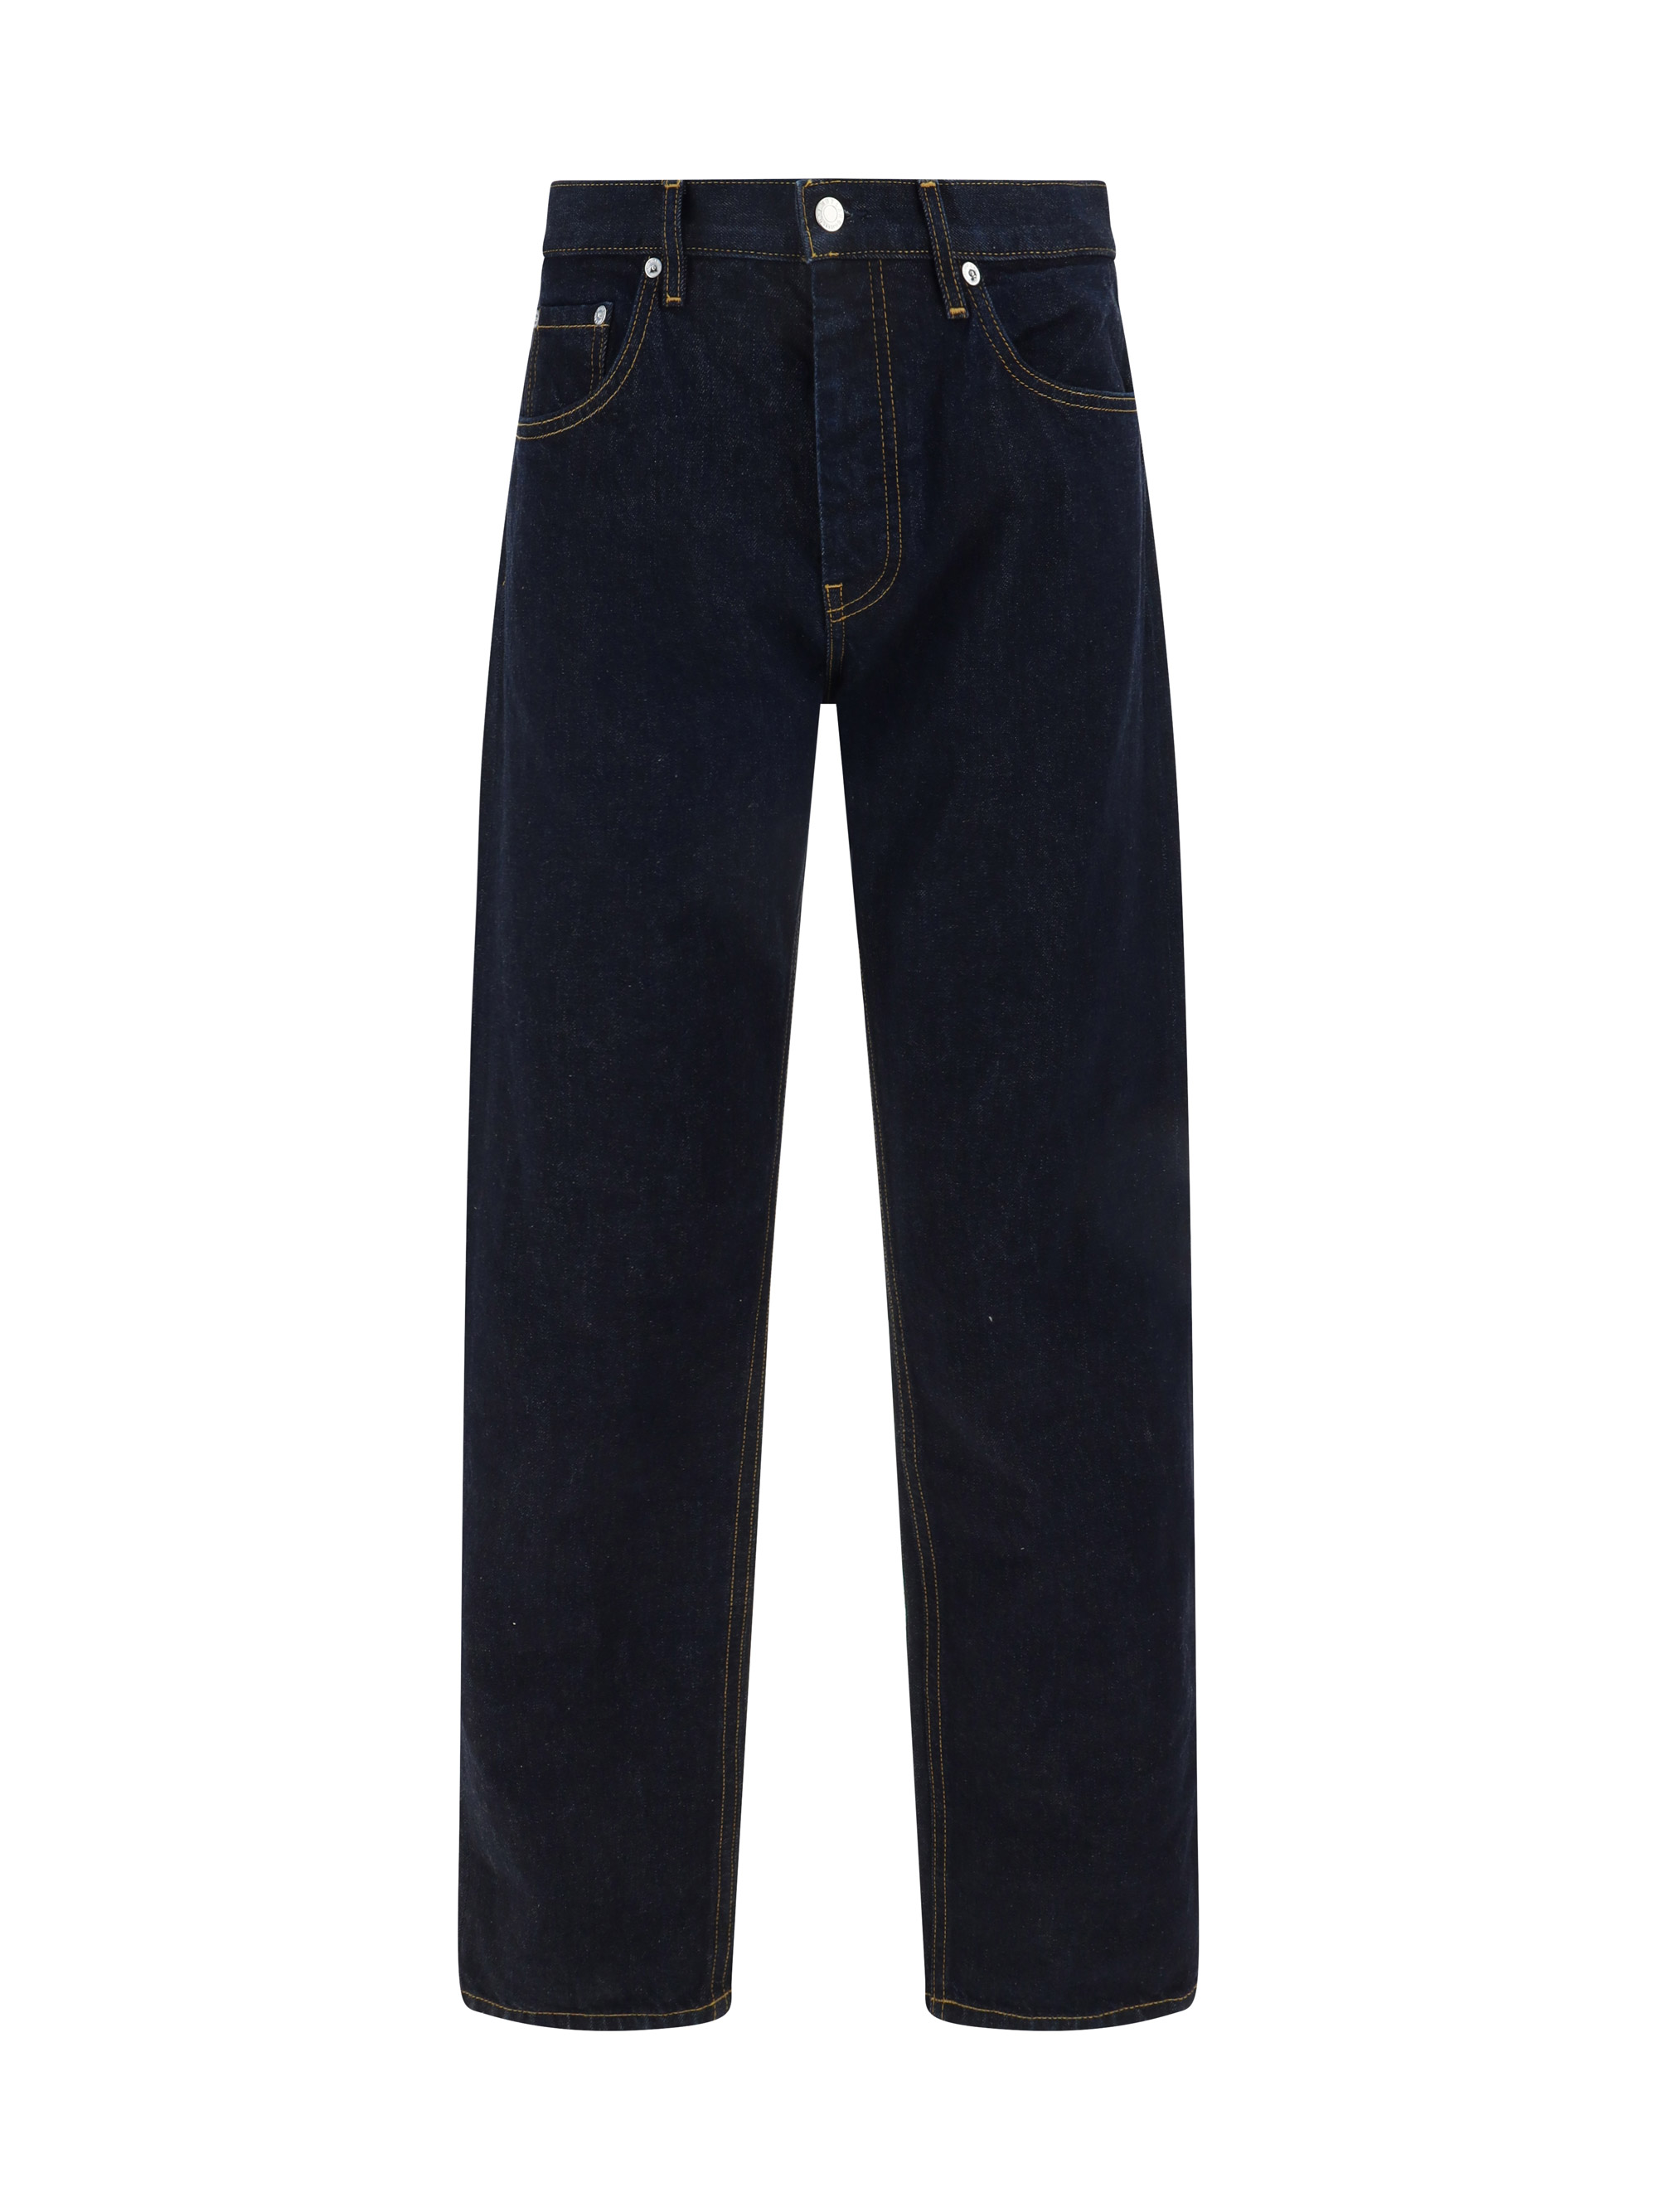 helmut lang - 98 classic jeans